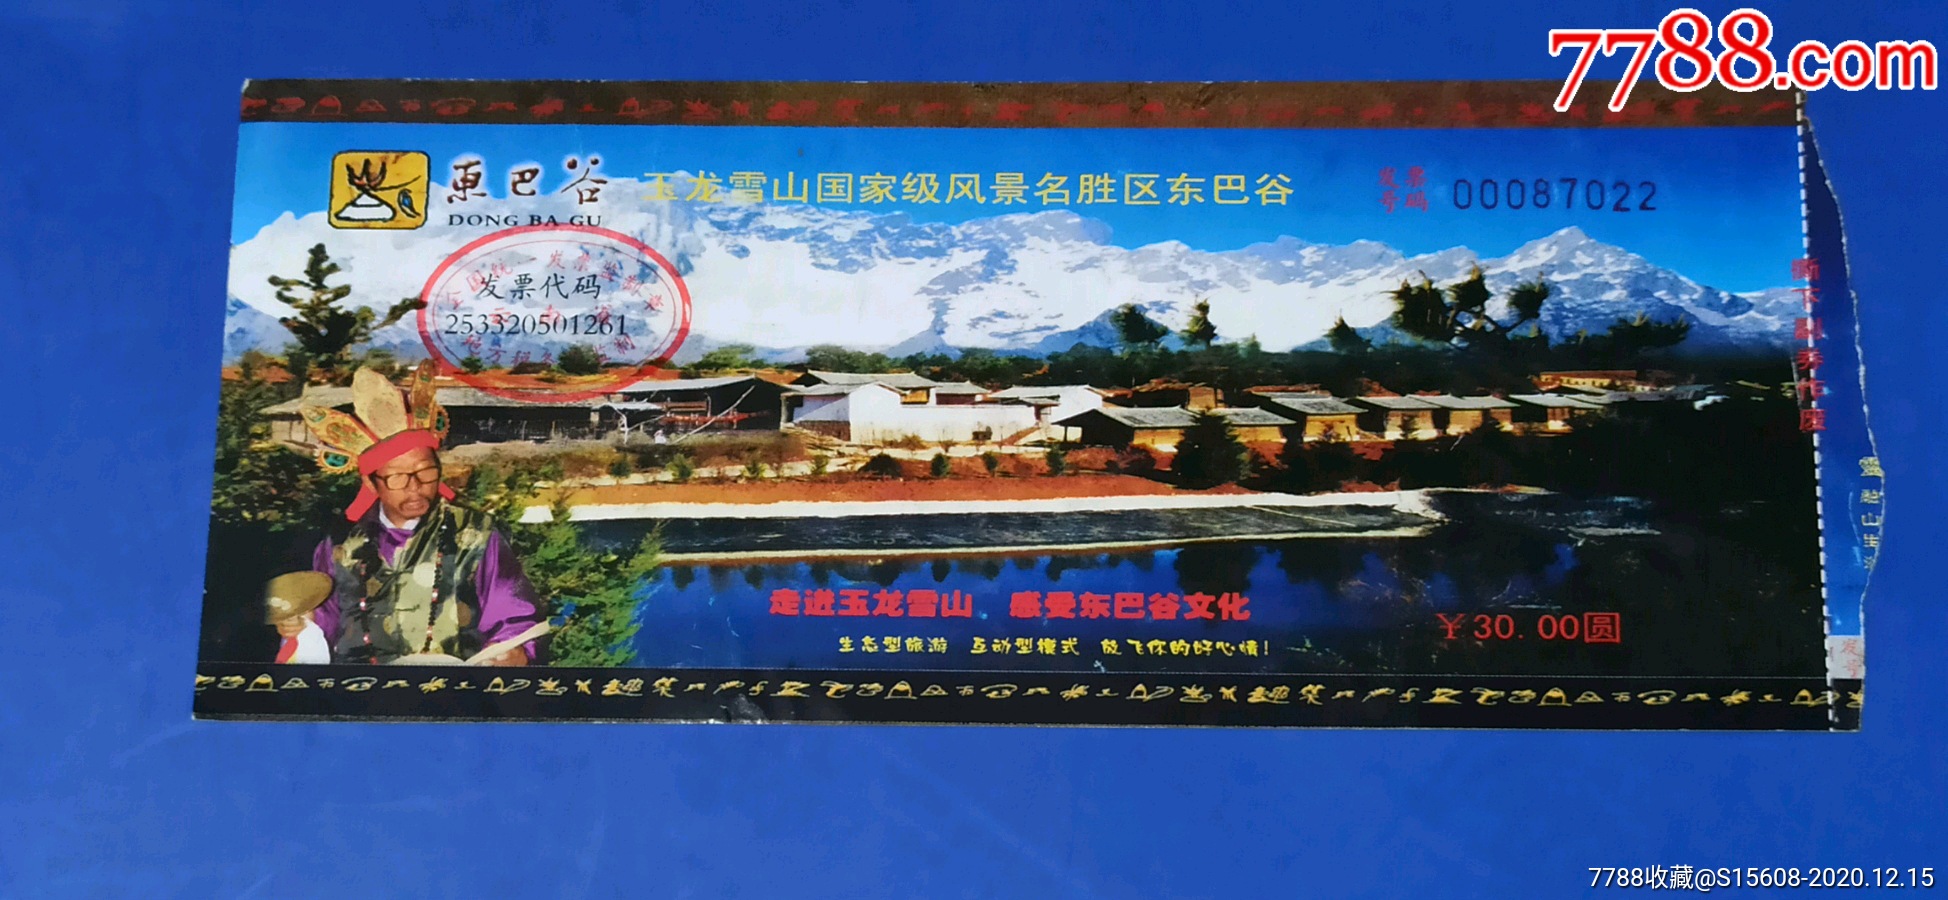 丽江东巴谷景区免门票图片